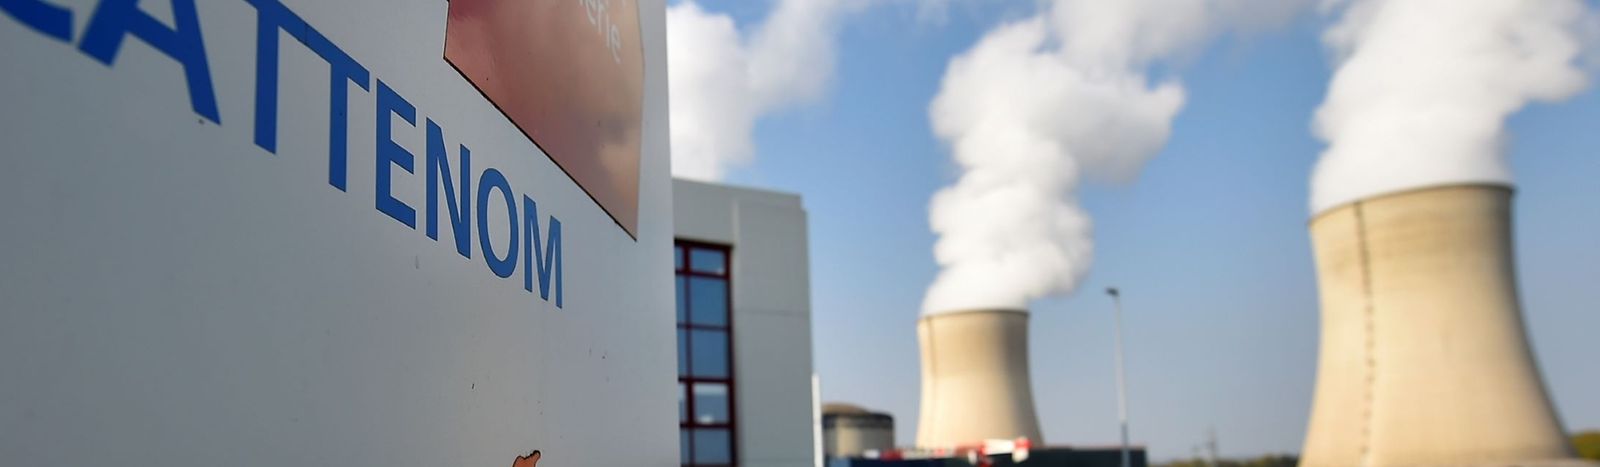 Des visites grand public sont organisées à la centrale nucléaire de Cattenom en septembre.